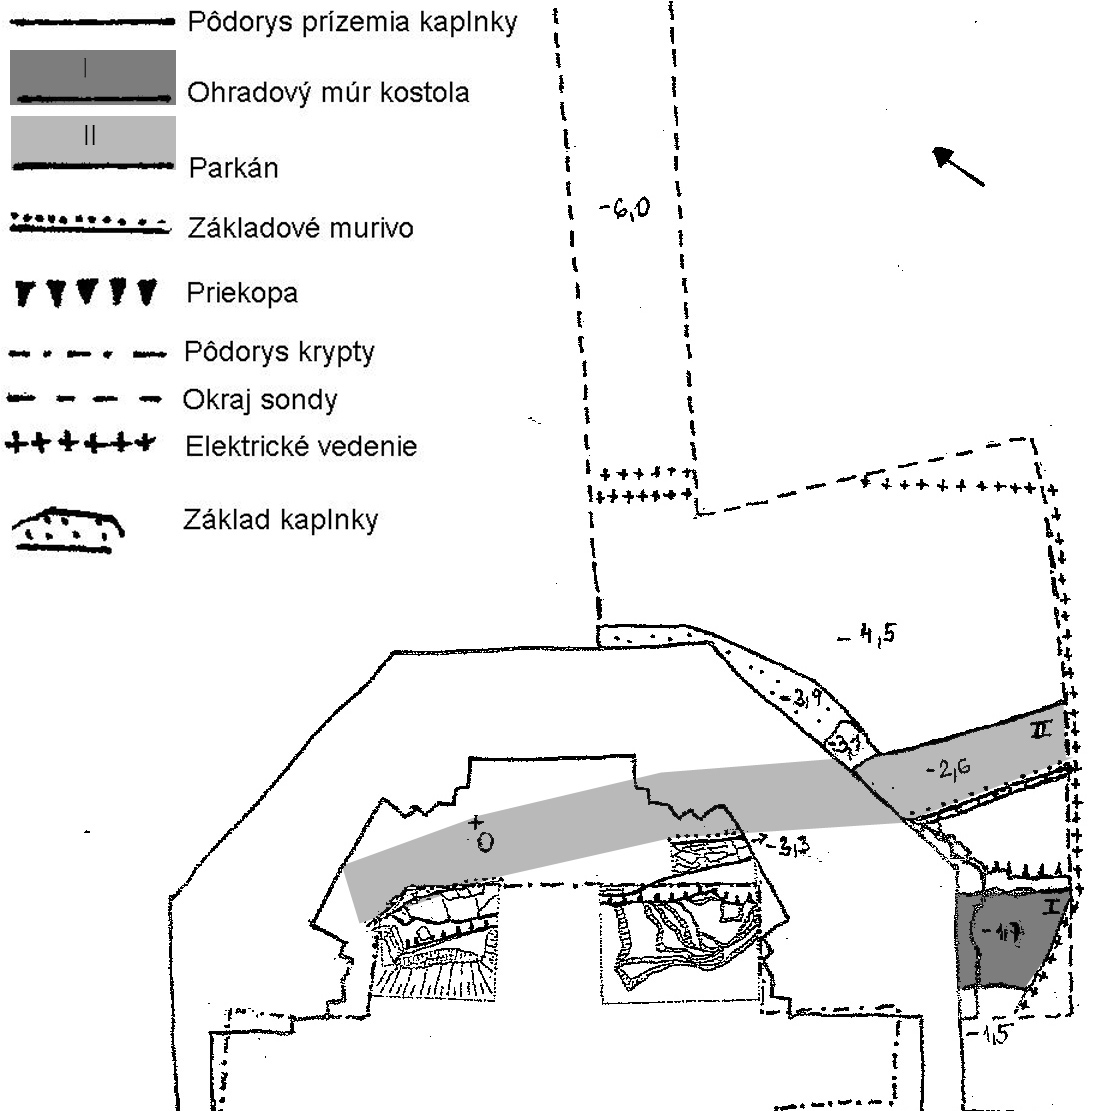 Pôdorys hradnej kaplnky s vyznačenými sondami a lokalizovanými múrmi.